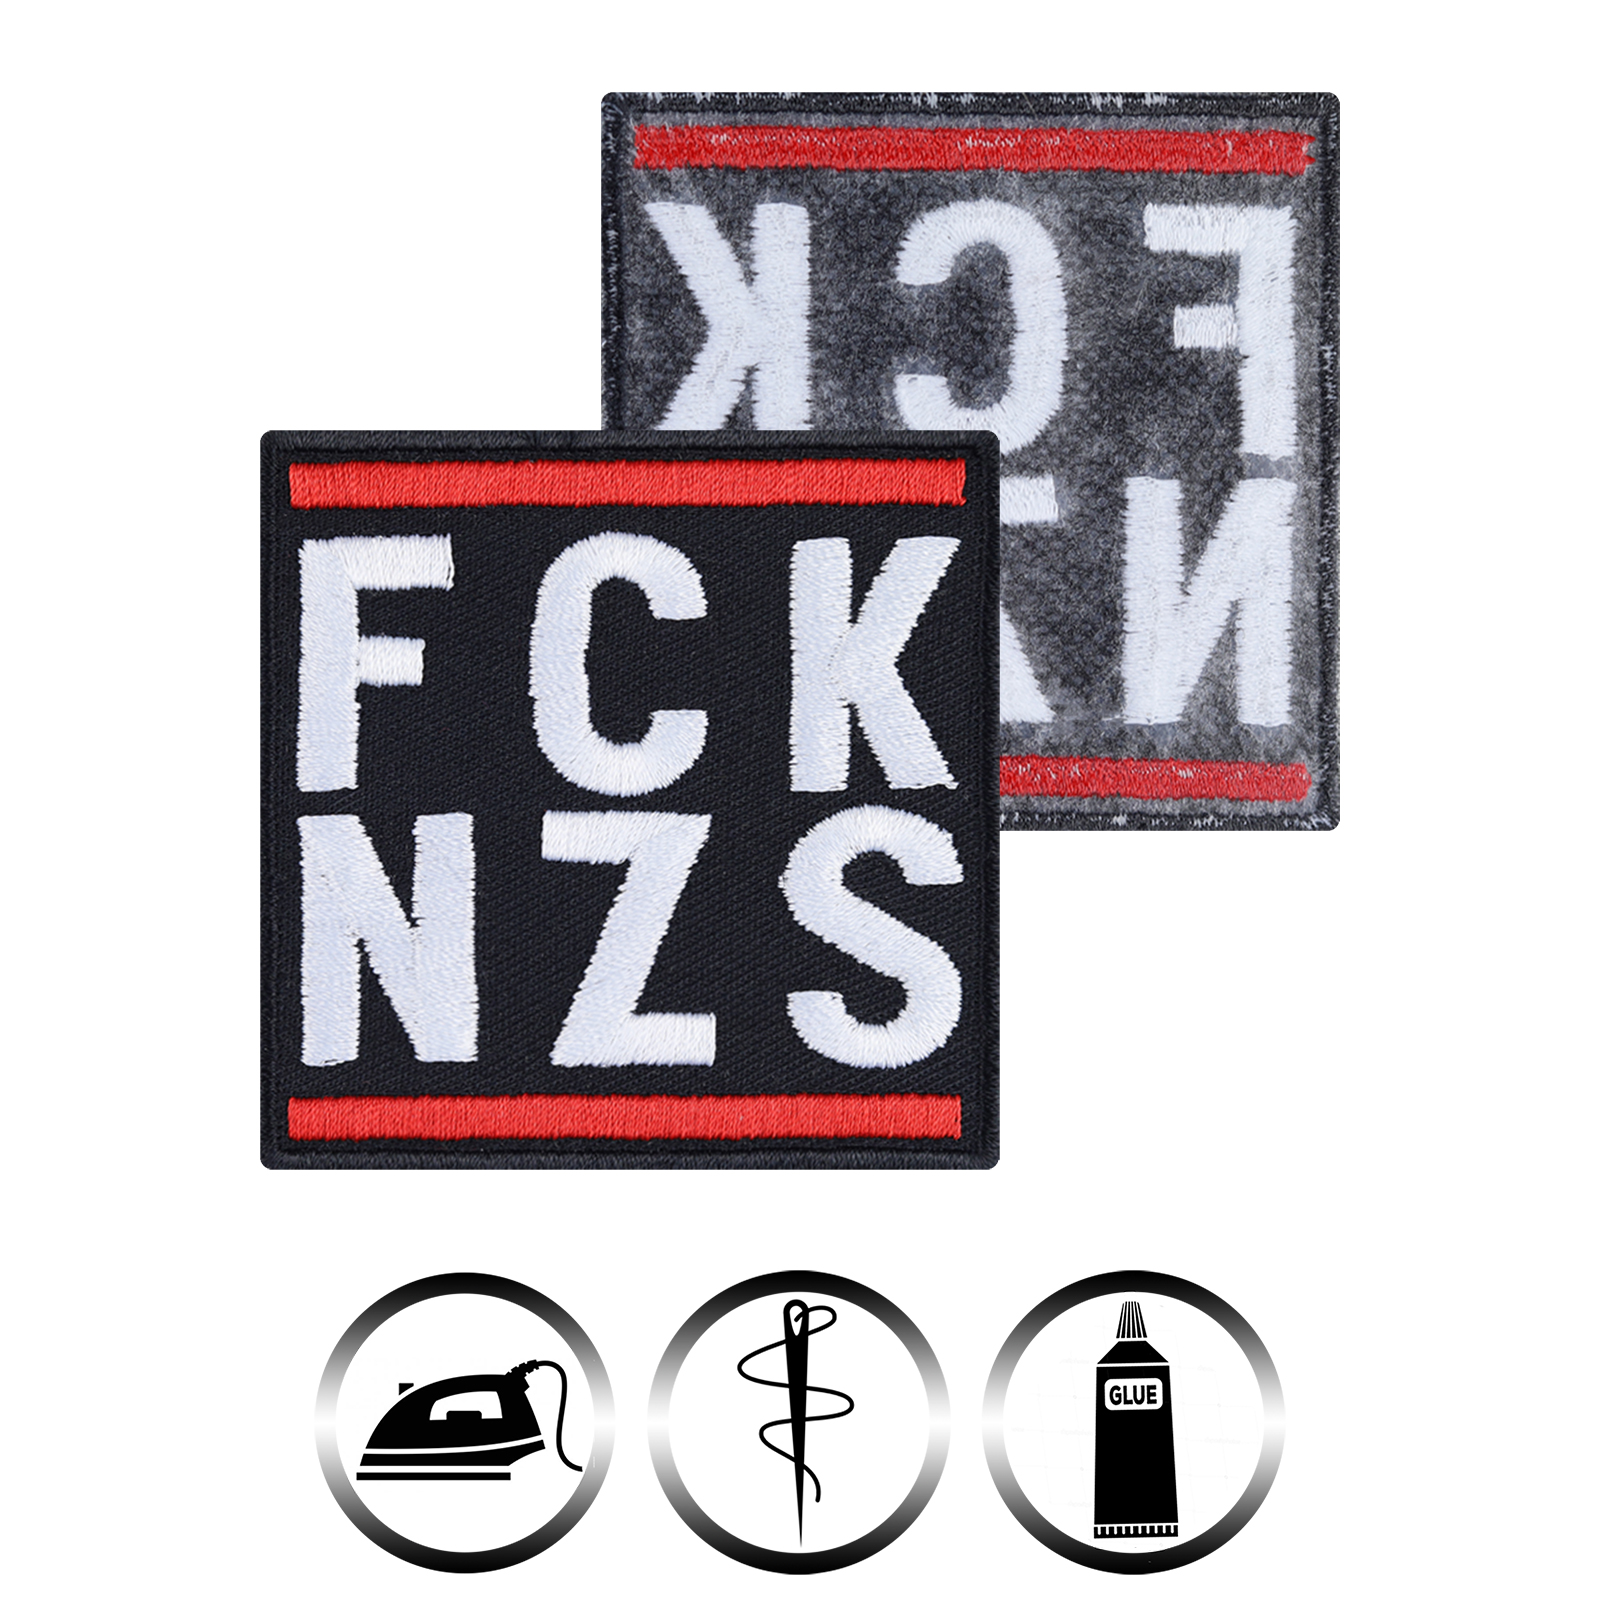 FCK NZS - Patch